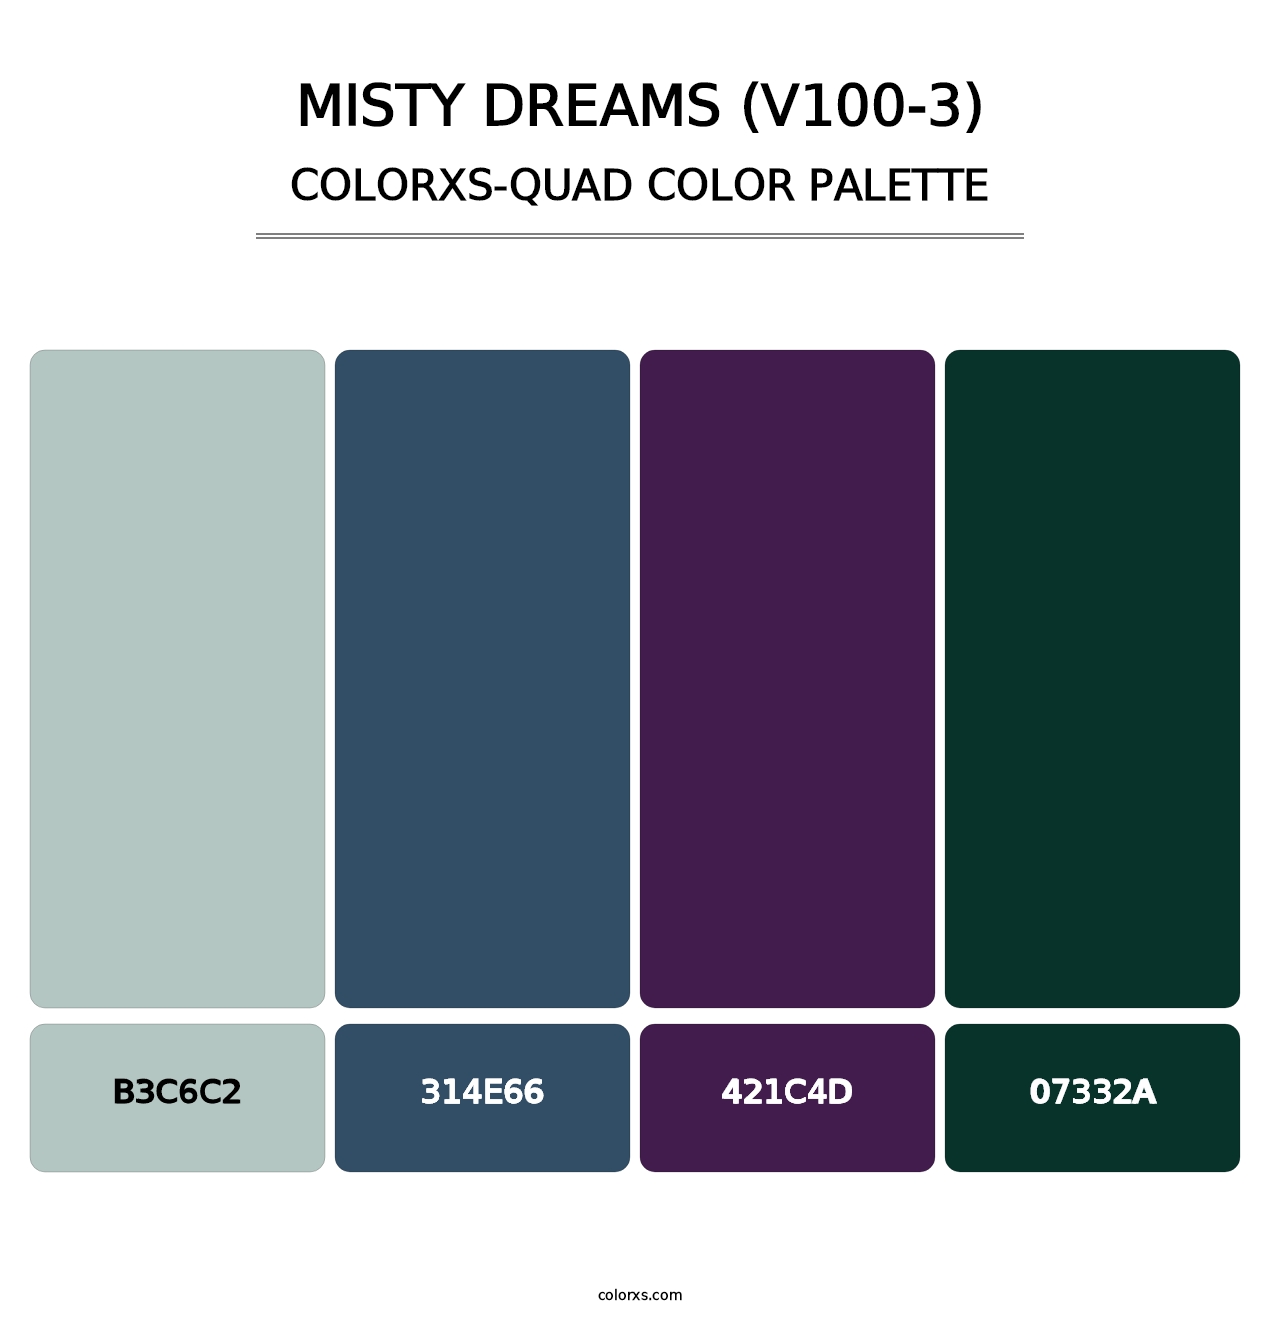 Misty Dreams (V100-3) - Colorxs Quad Palette